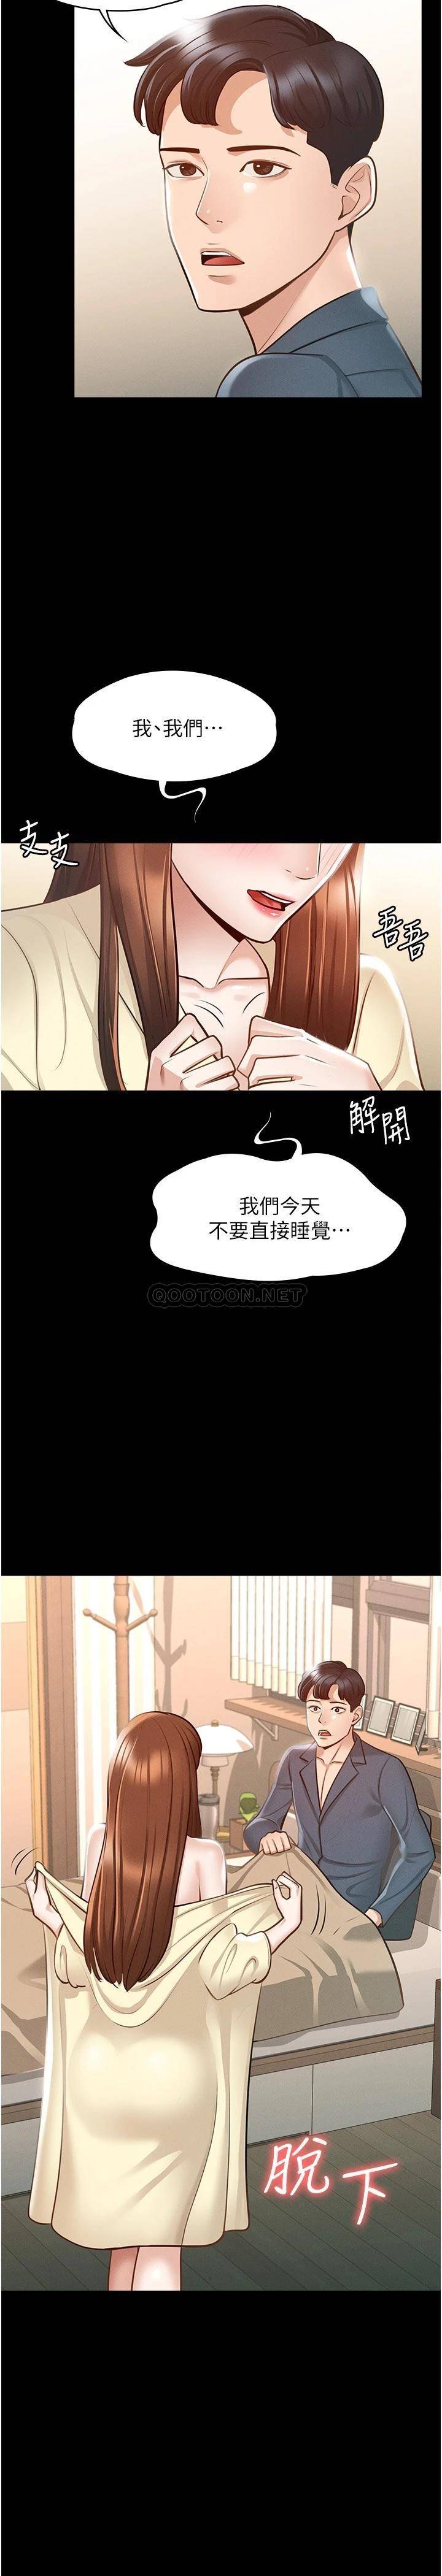 韩国污漫画 超級公務員 第8话 眼前的「性」福最重要! 32